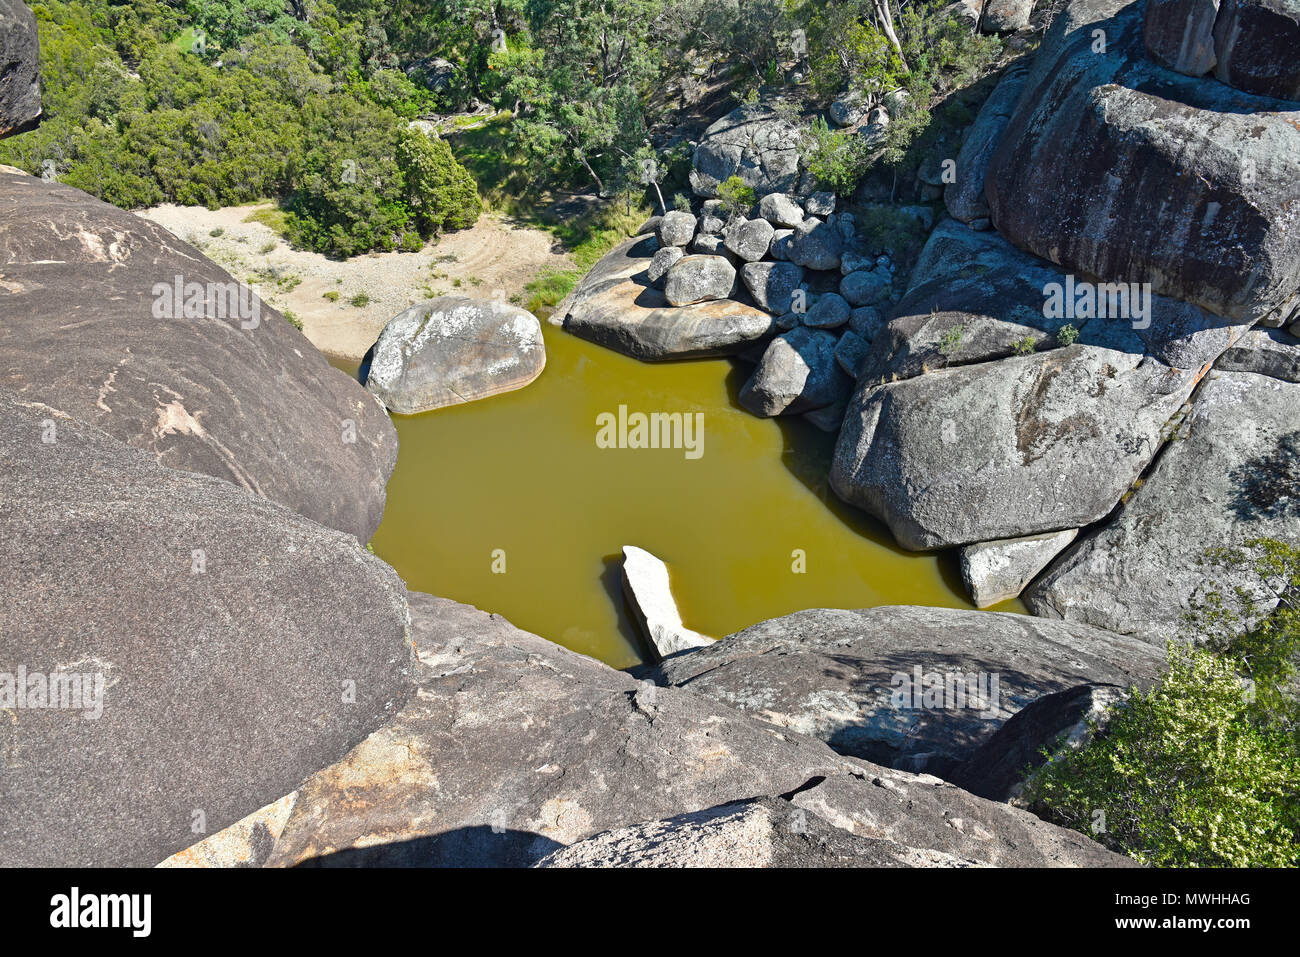 Réserve Naturelle de Cranky Rock près de Warialda dans le nord de la Nouvelle-Galles du Sud, Australie Banque D'Images